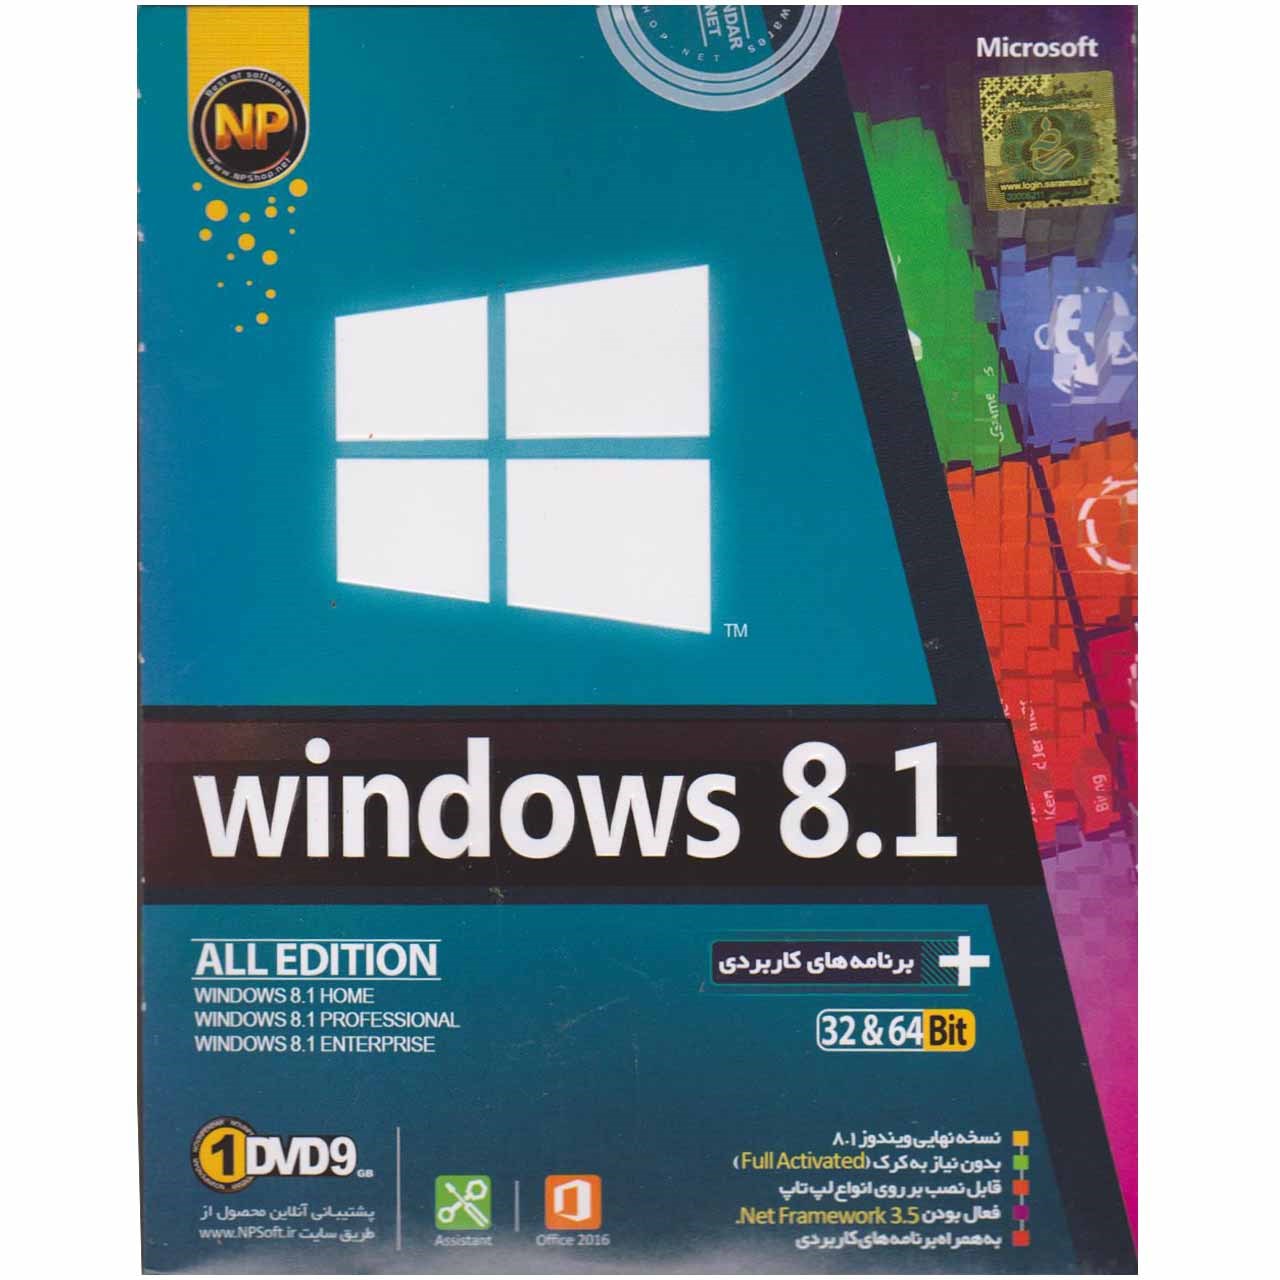 سیستم عامل Windows 8.1  نشر نوین پندار